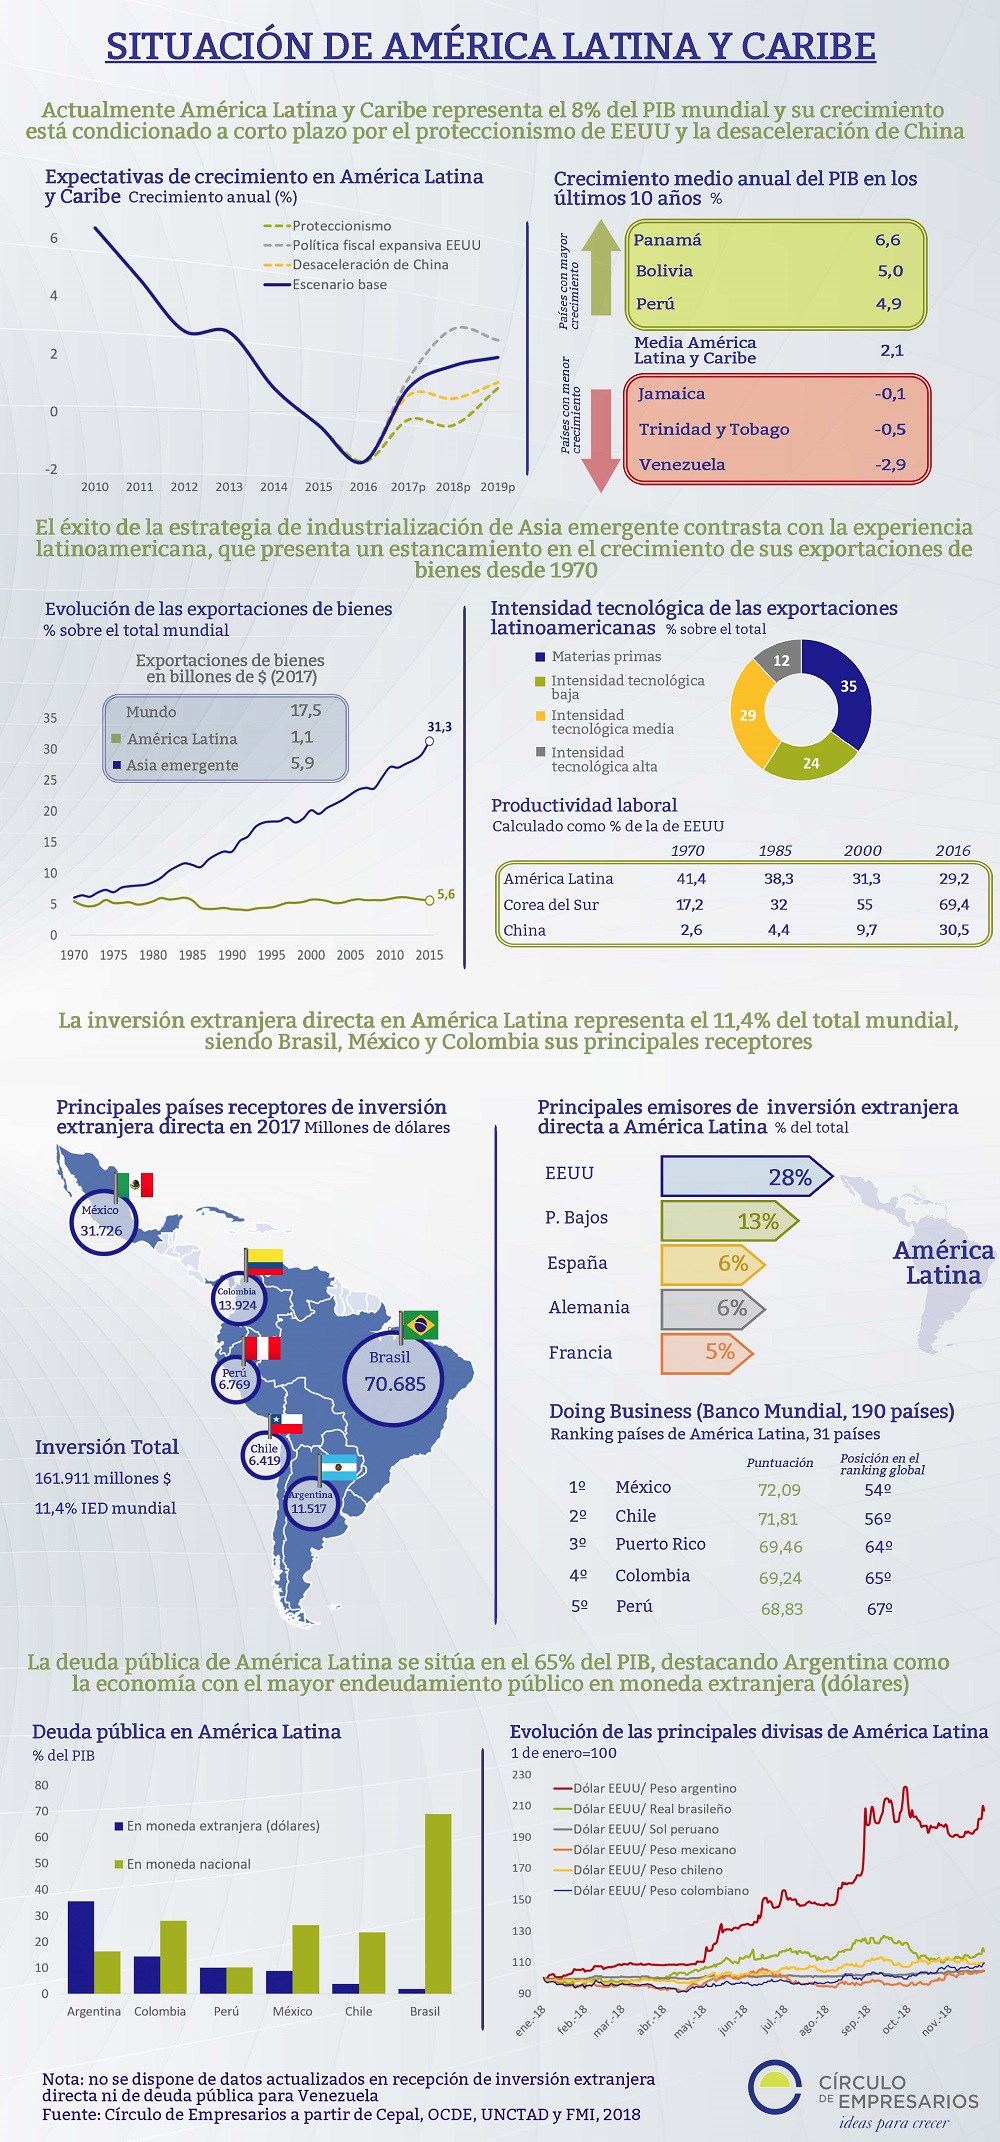 Situación de América Latina y Caribe infografía Círculo de Empresarios noviembre 2018